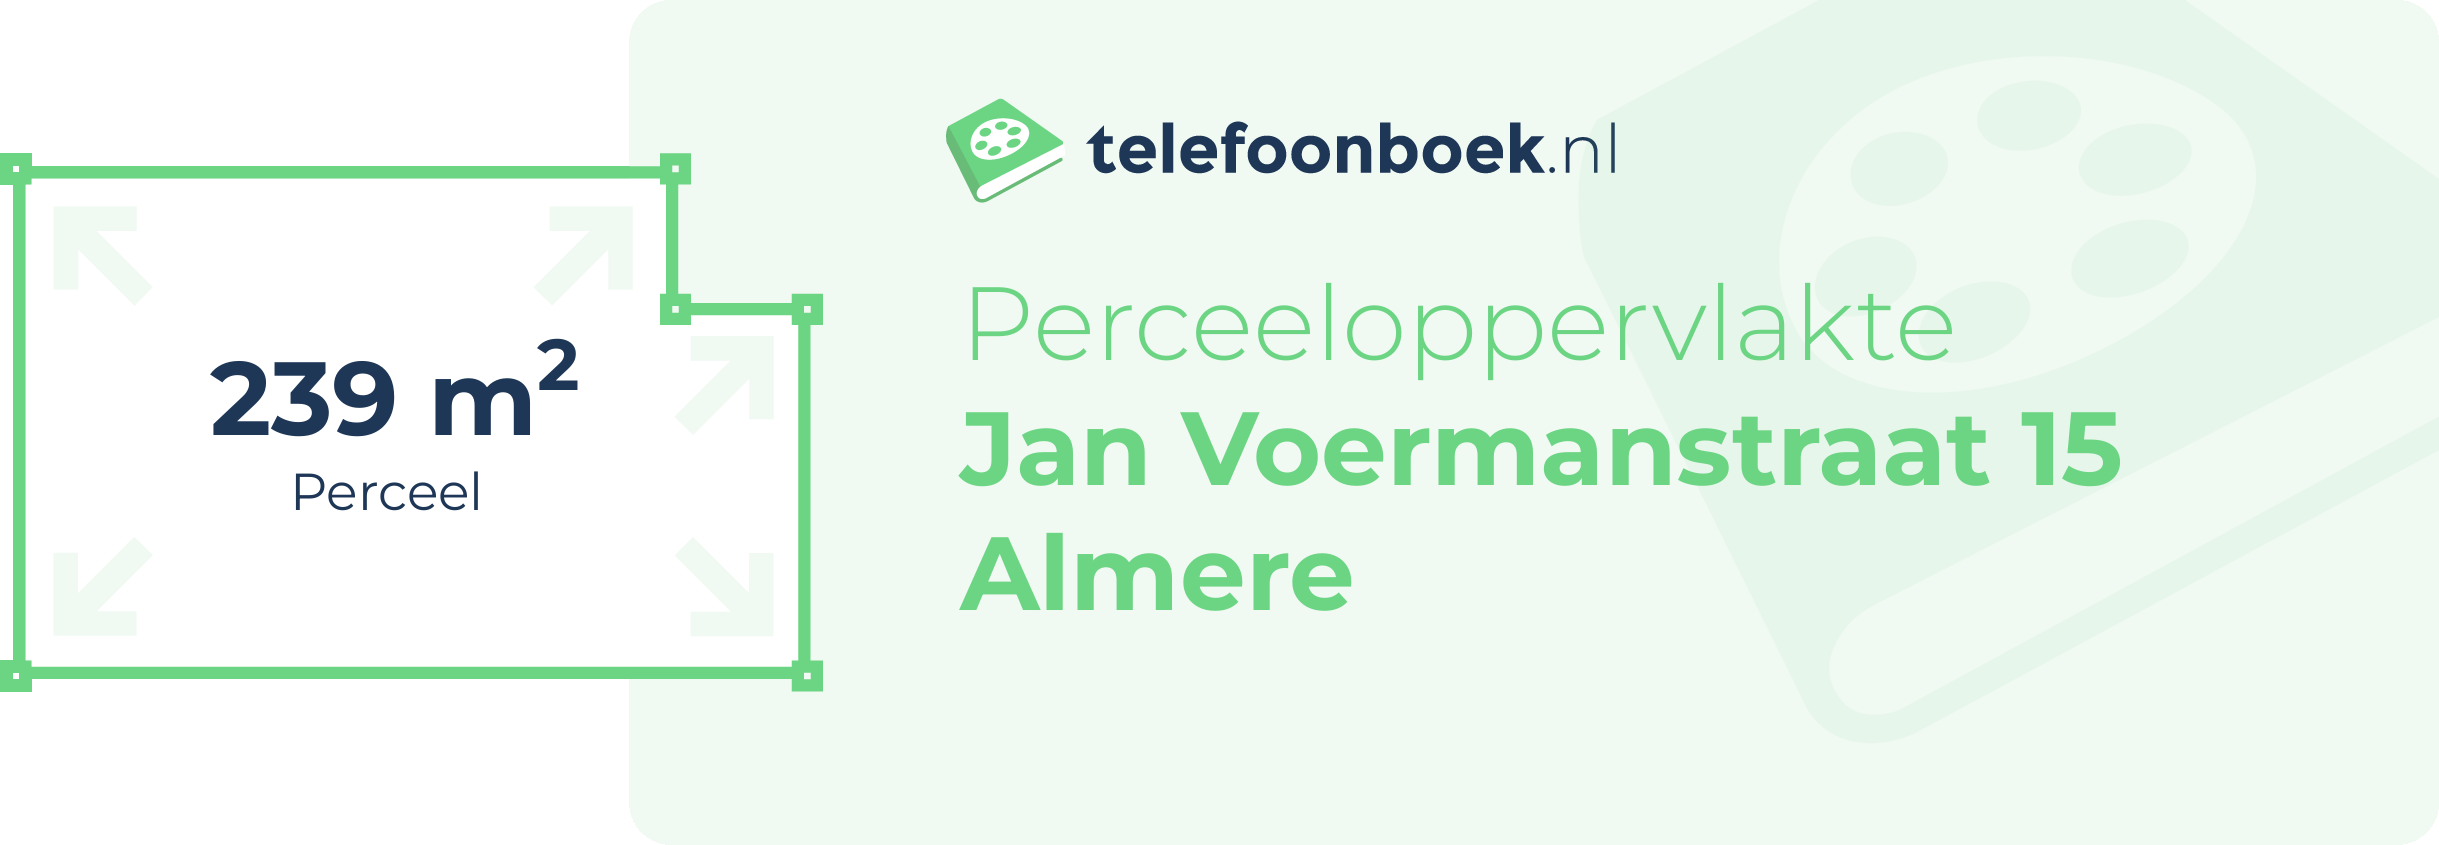 Perceeloppervlakte Jan Voermanstraat 15 Almere